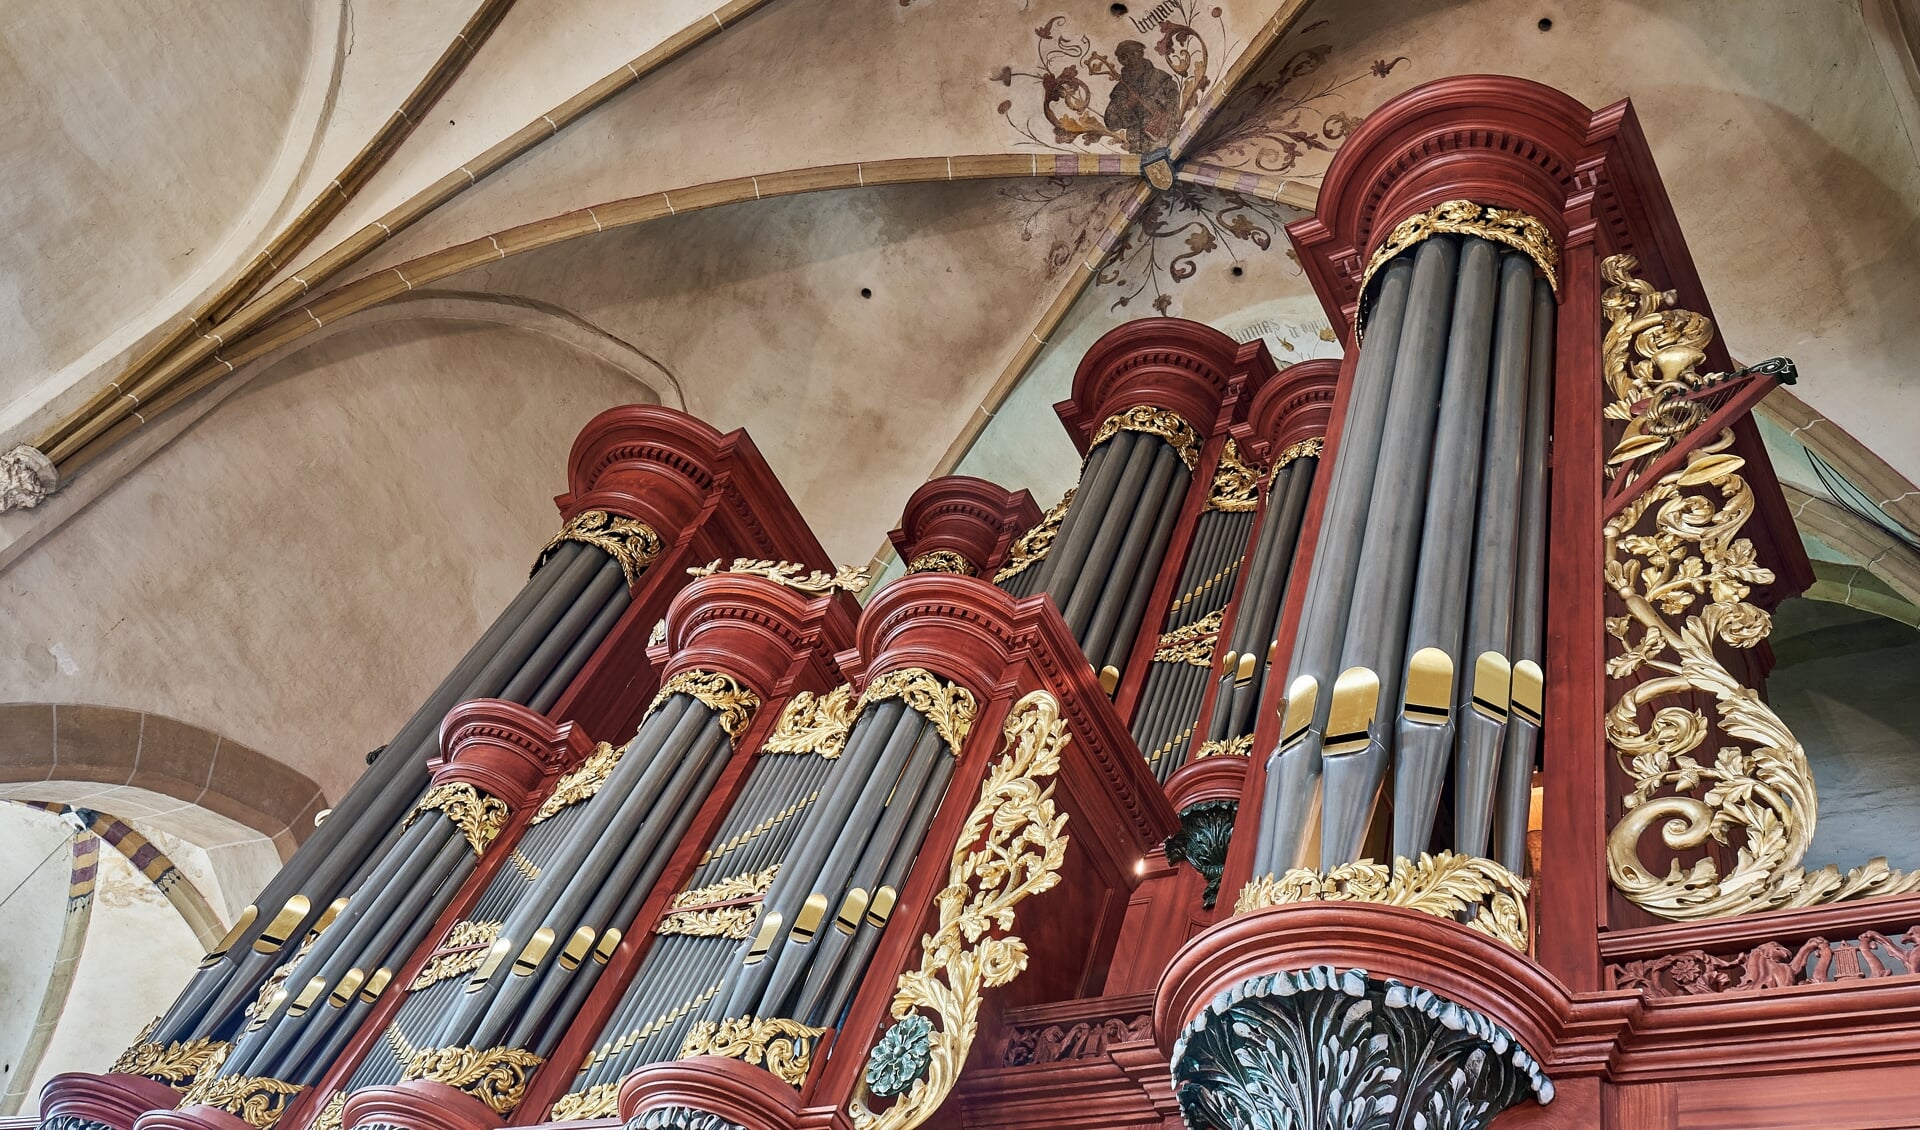 Metzler-orgel in de Jacobskerk. Foto: Douwe Haandrikman